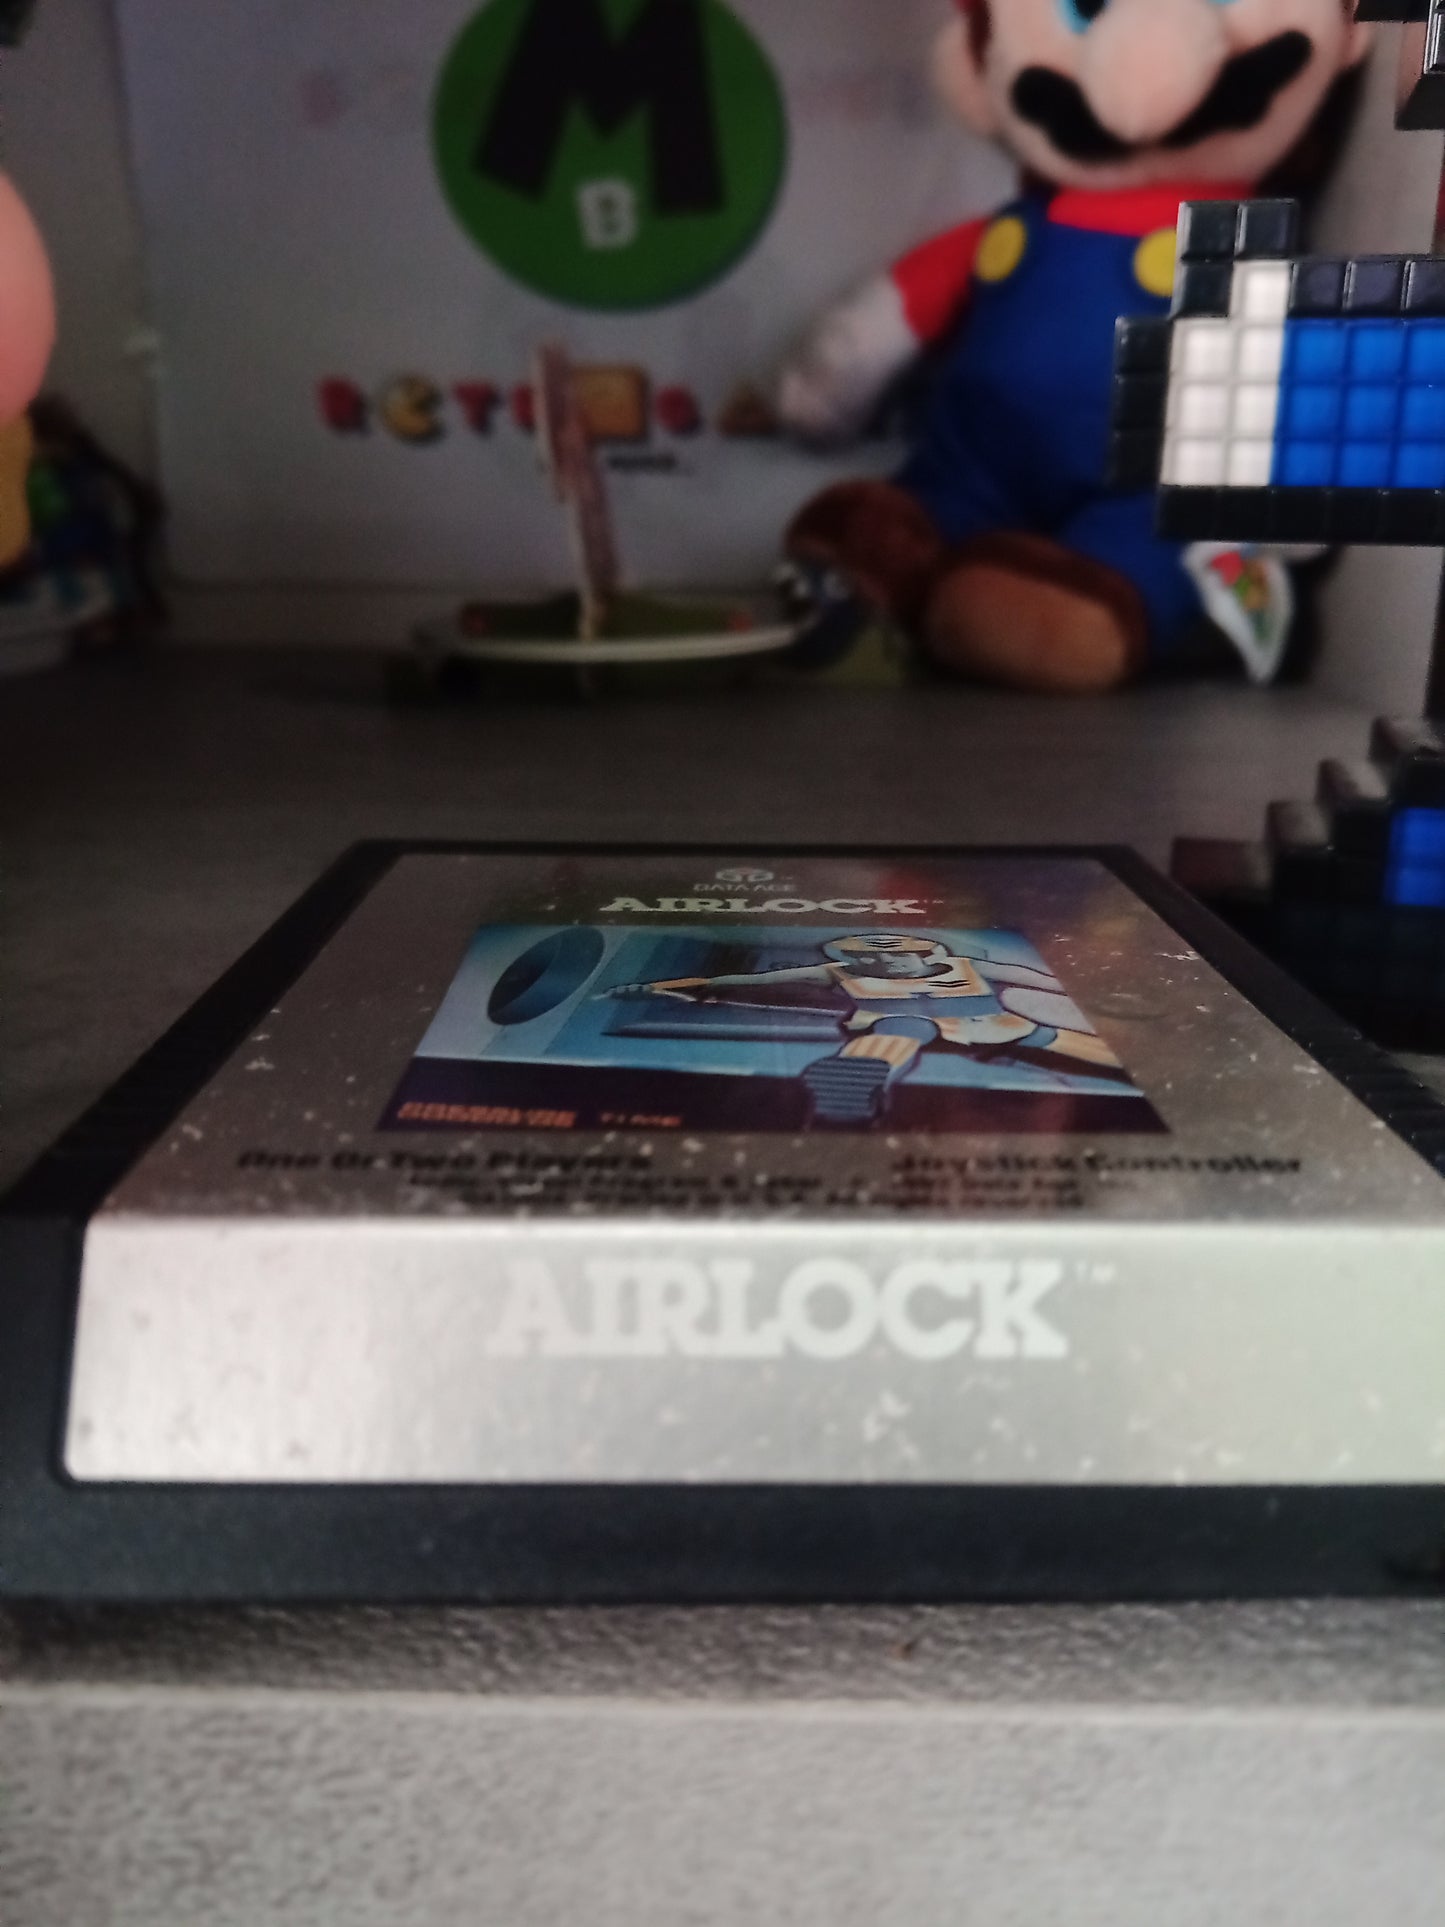 Airlock